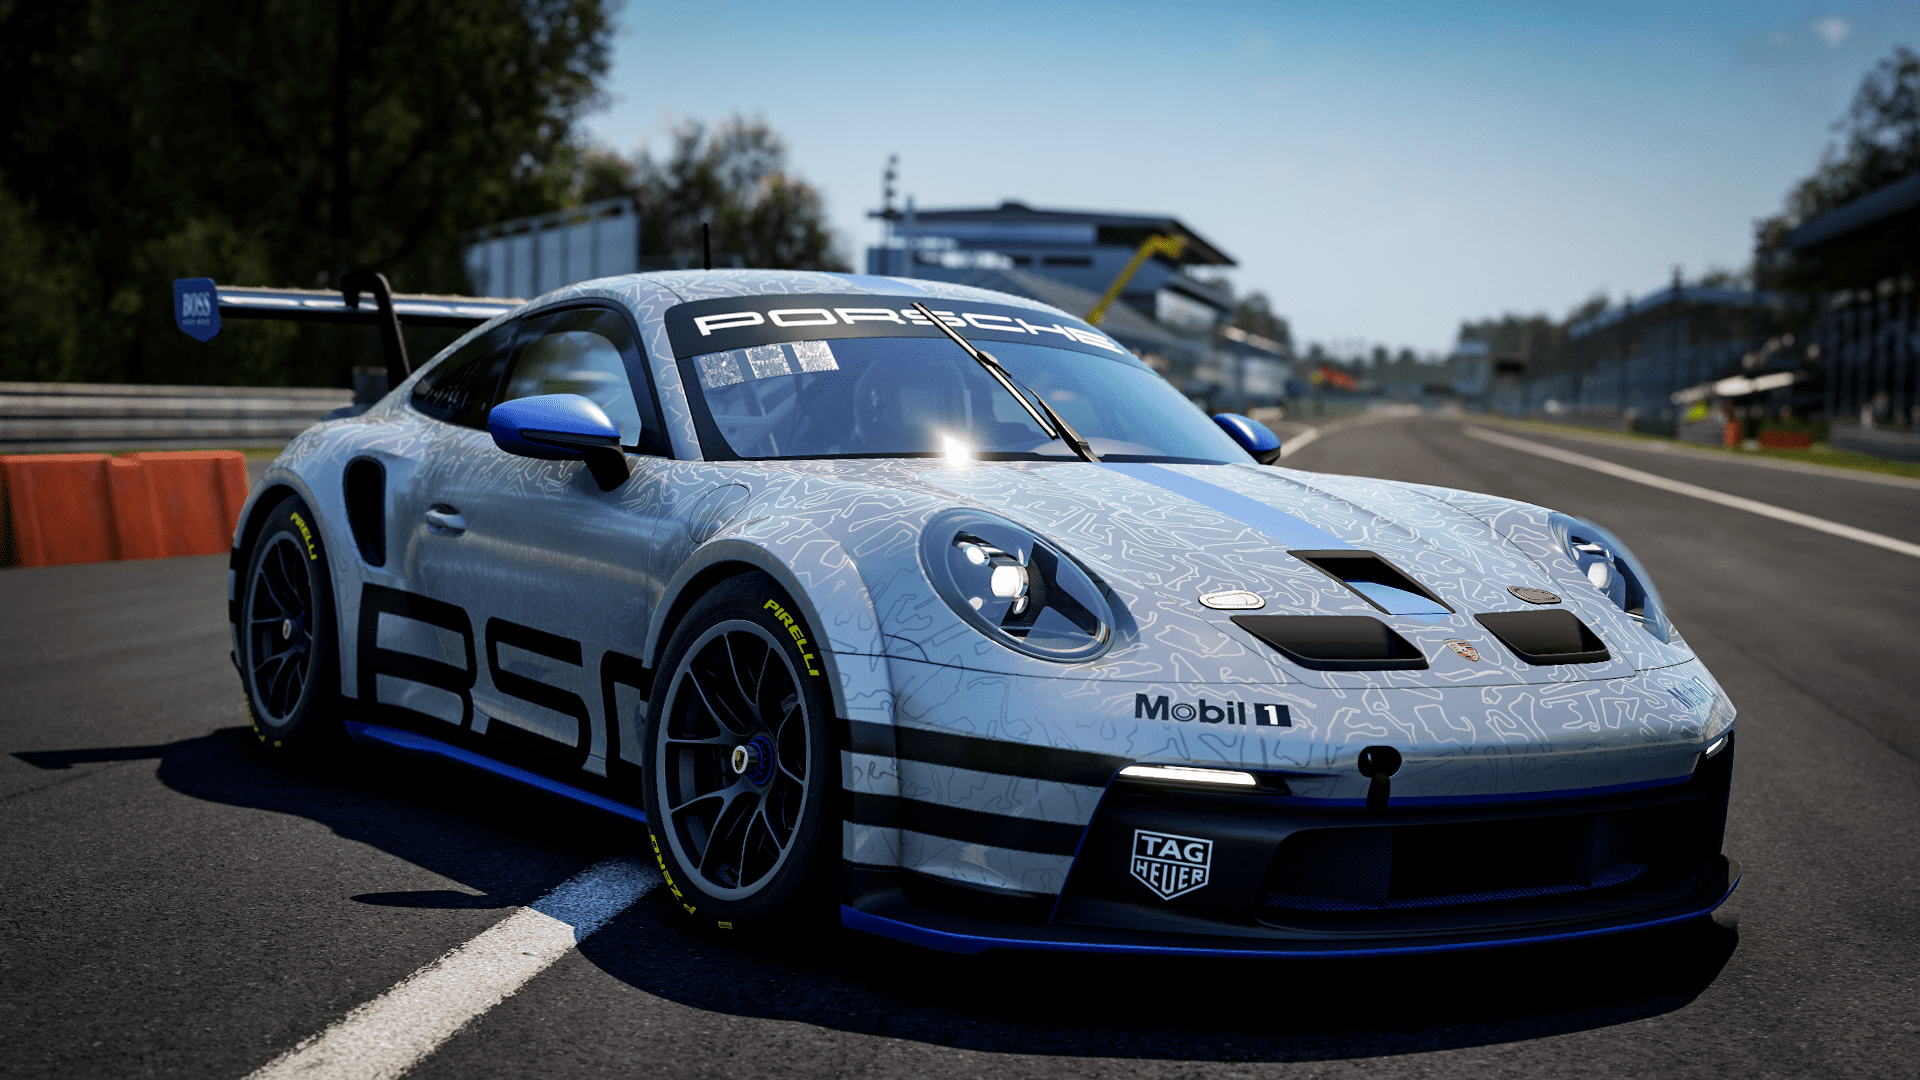 More information about "Porsche Esports Carrera Cup Italia riaccende i motori"